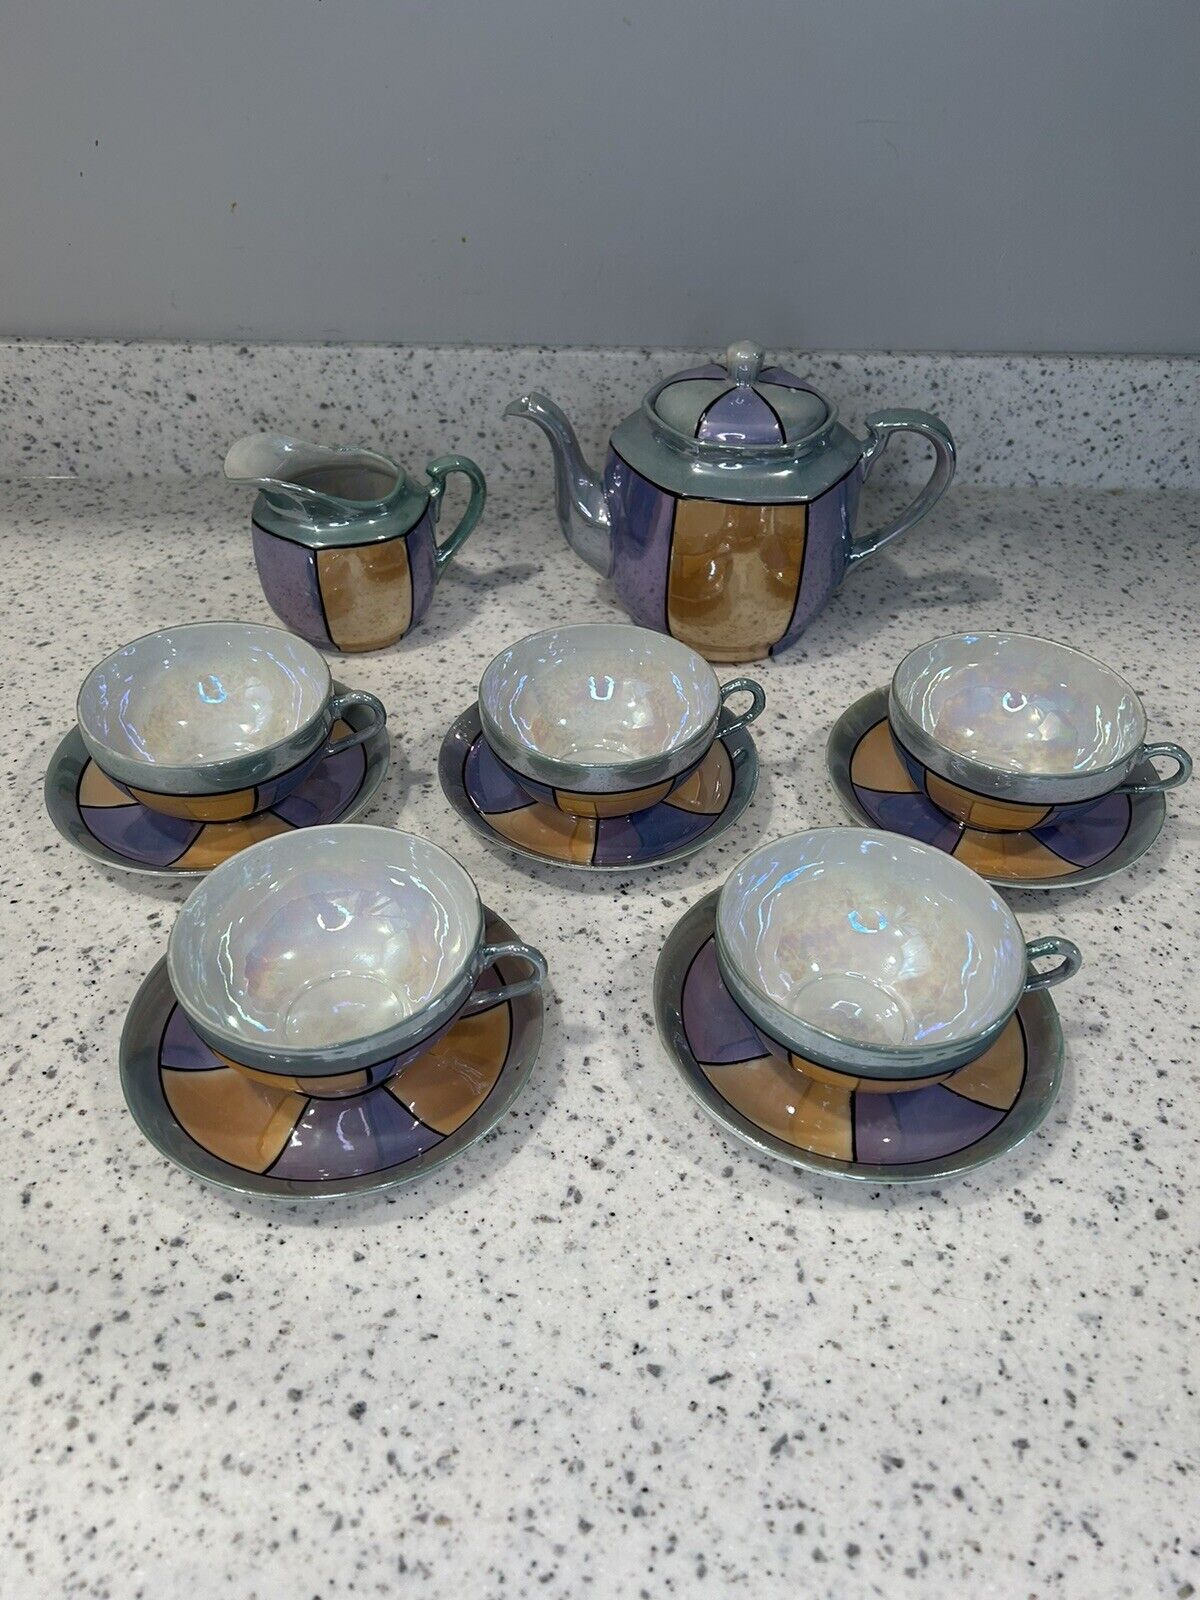 Japan Lusterware Tea Set Coffee Teacups Saucer Drinkware Geometric Vintage